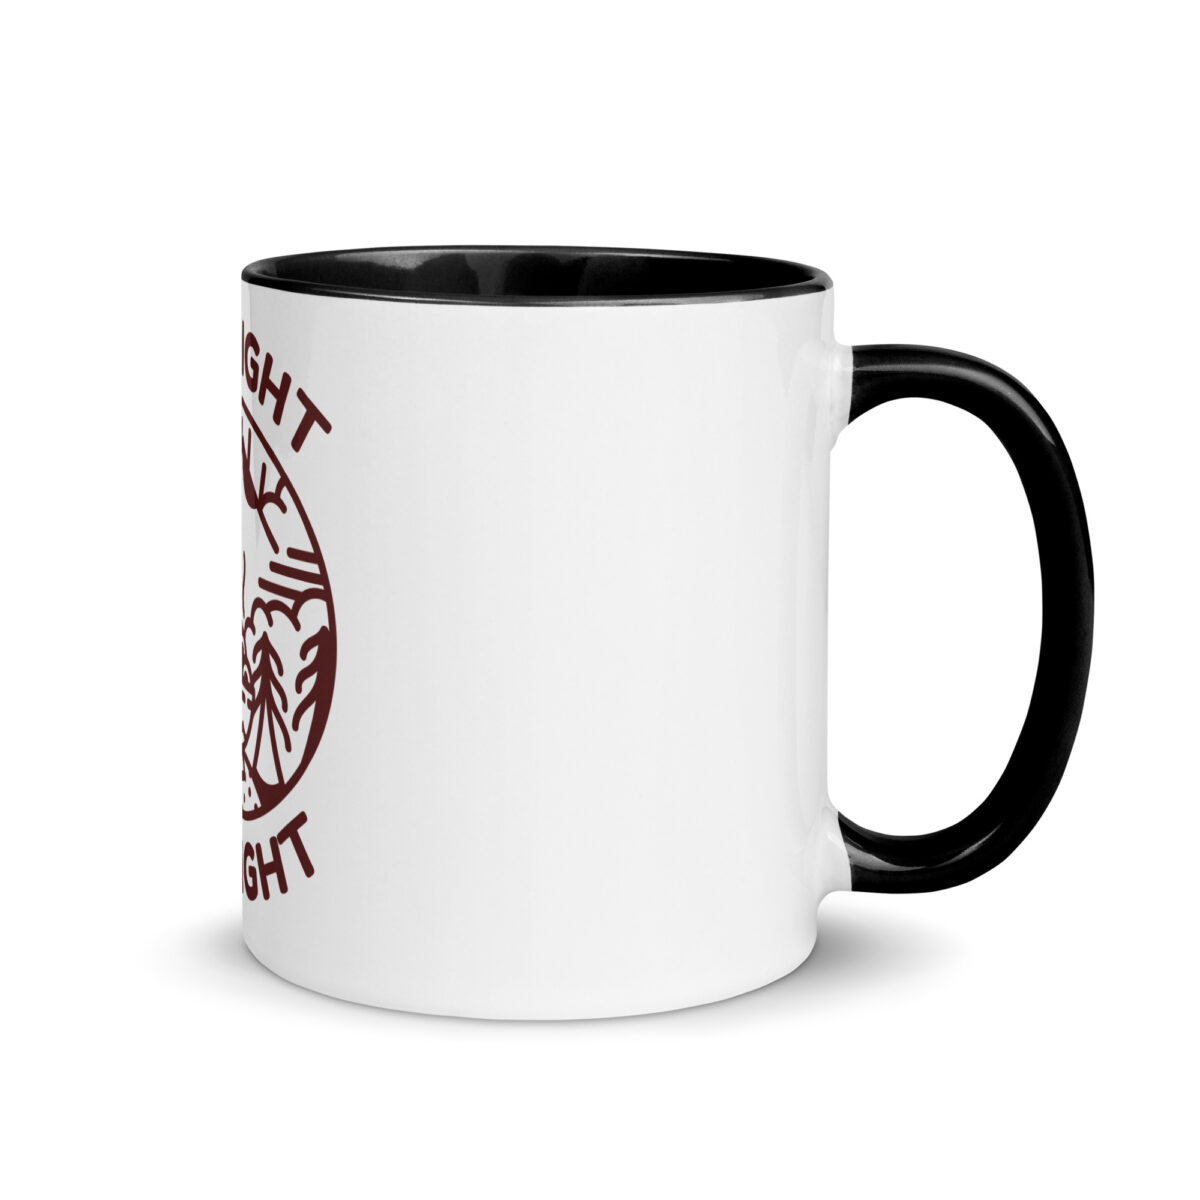 white ceramic mug with color inside black 11oz right 643a8df655bb9